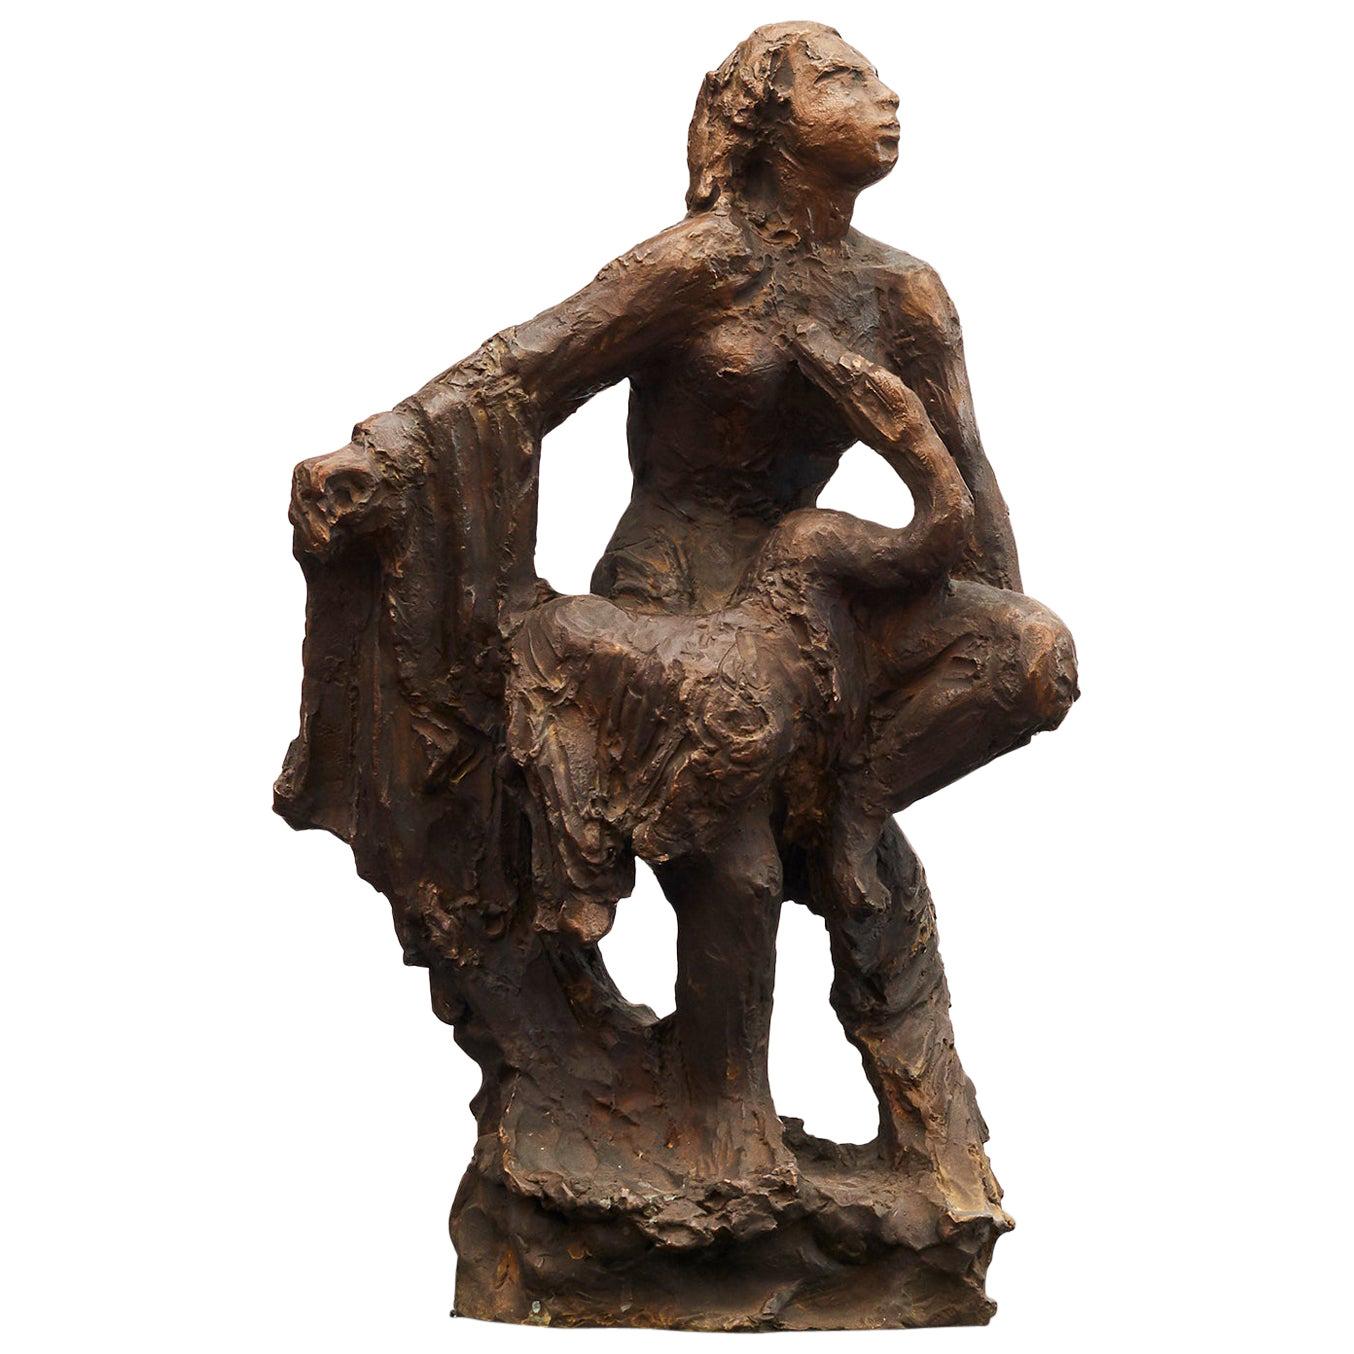 Bronzeskulptur „Leda und der Schwan“ von Mogens Bggild, Dänemark, 1950–1960